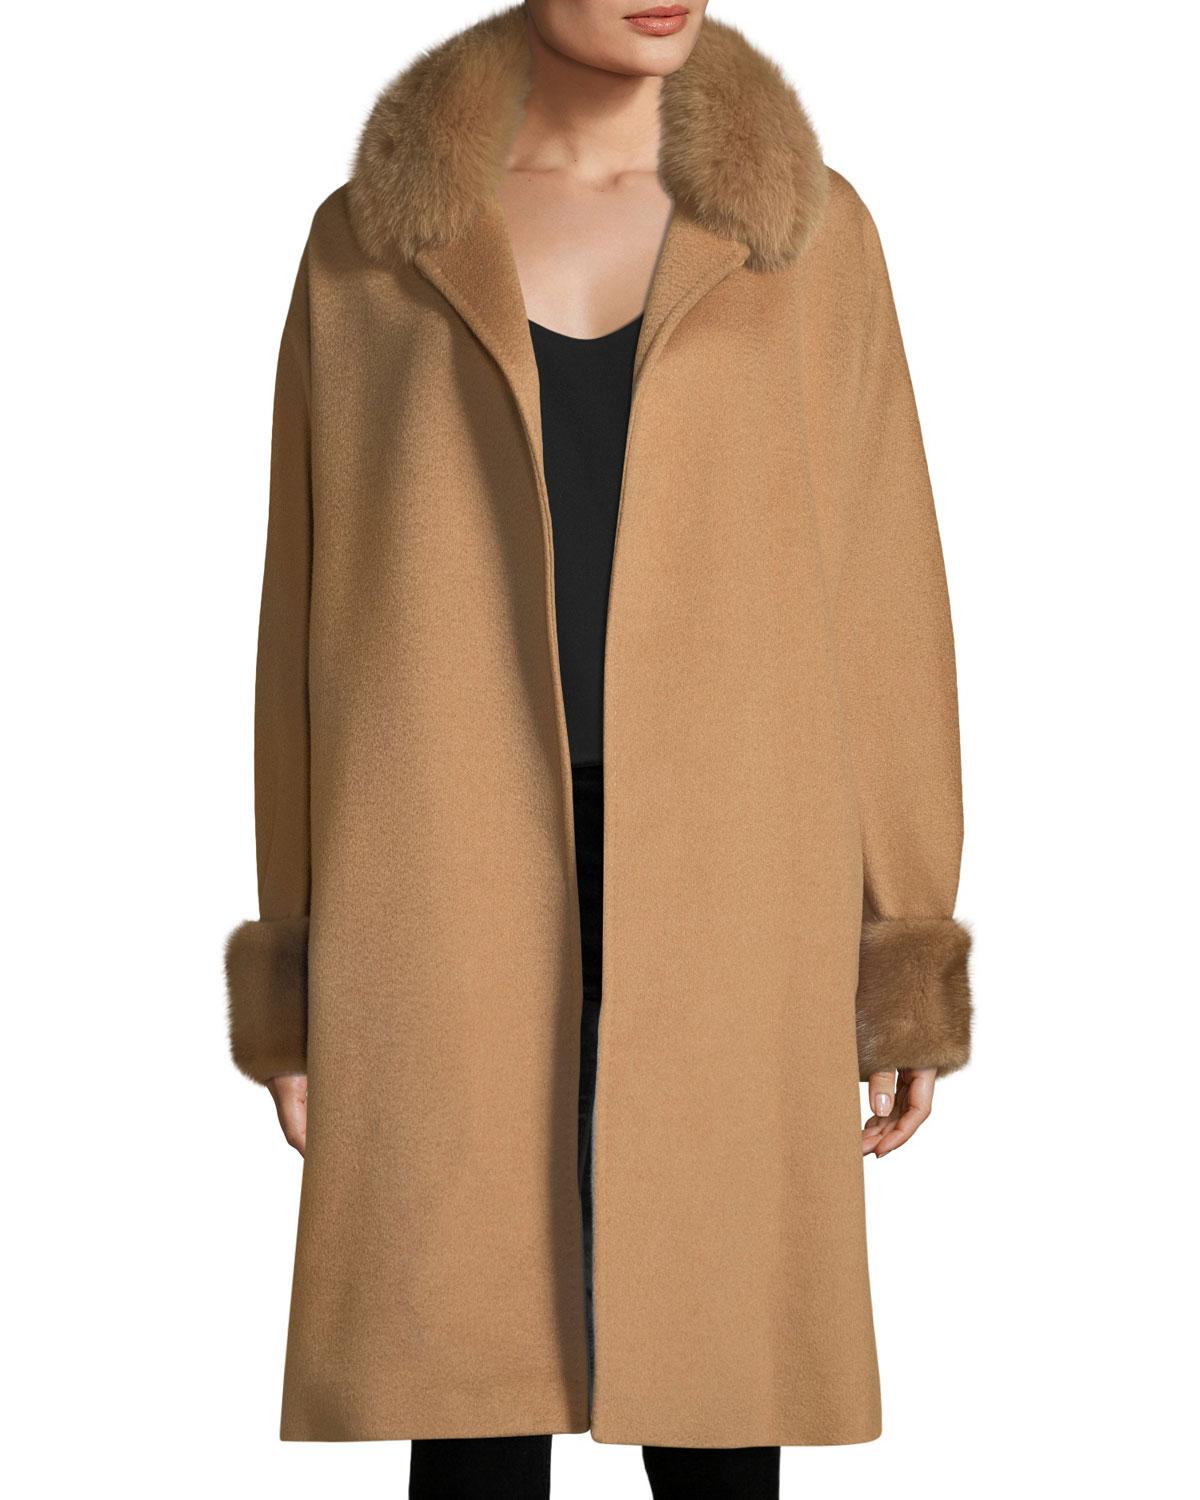 Lyst - Max mara Fur-trim Camel Hair Wrap Coat in Natural